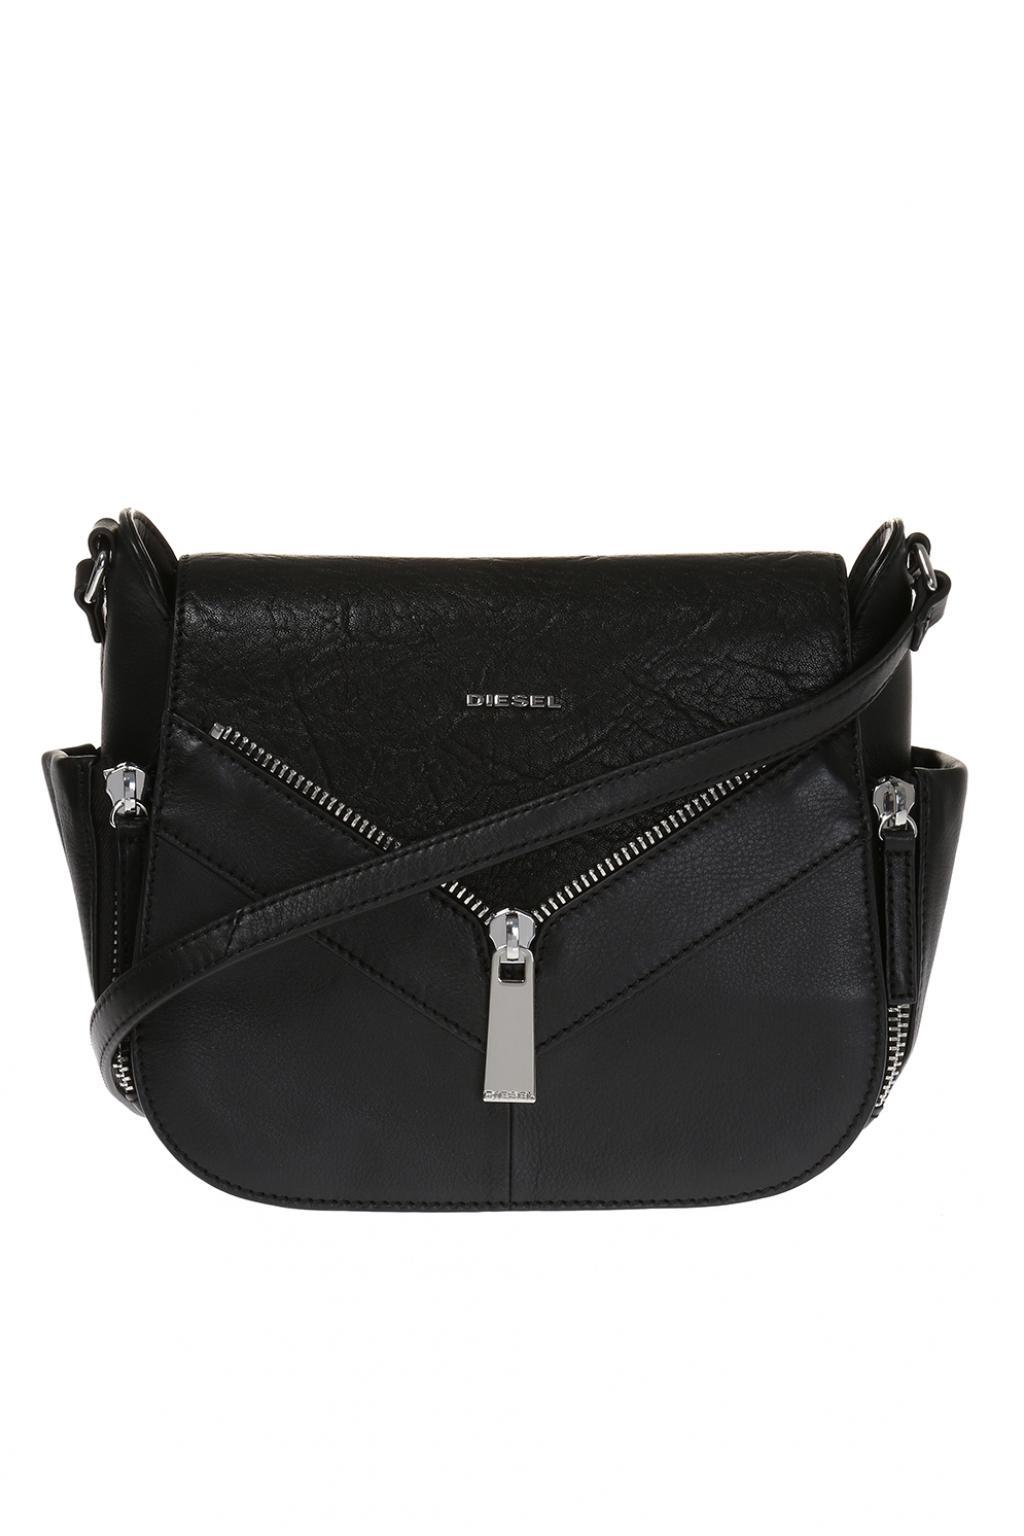 DIESEL Leather 'le-claritha' Shoulder Bag in Black - Lyst